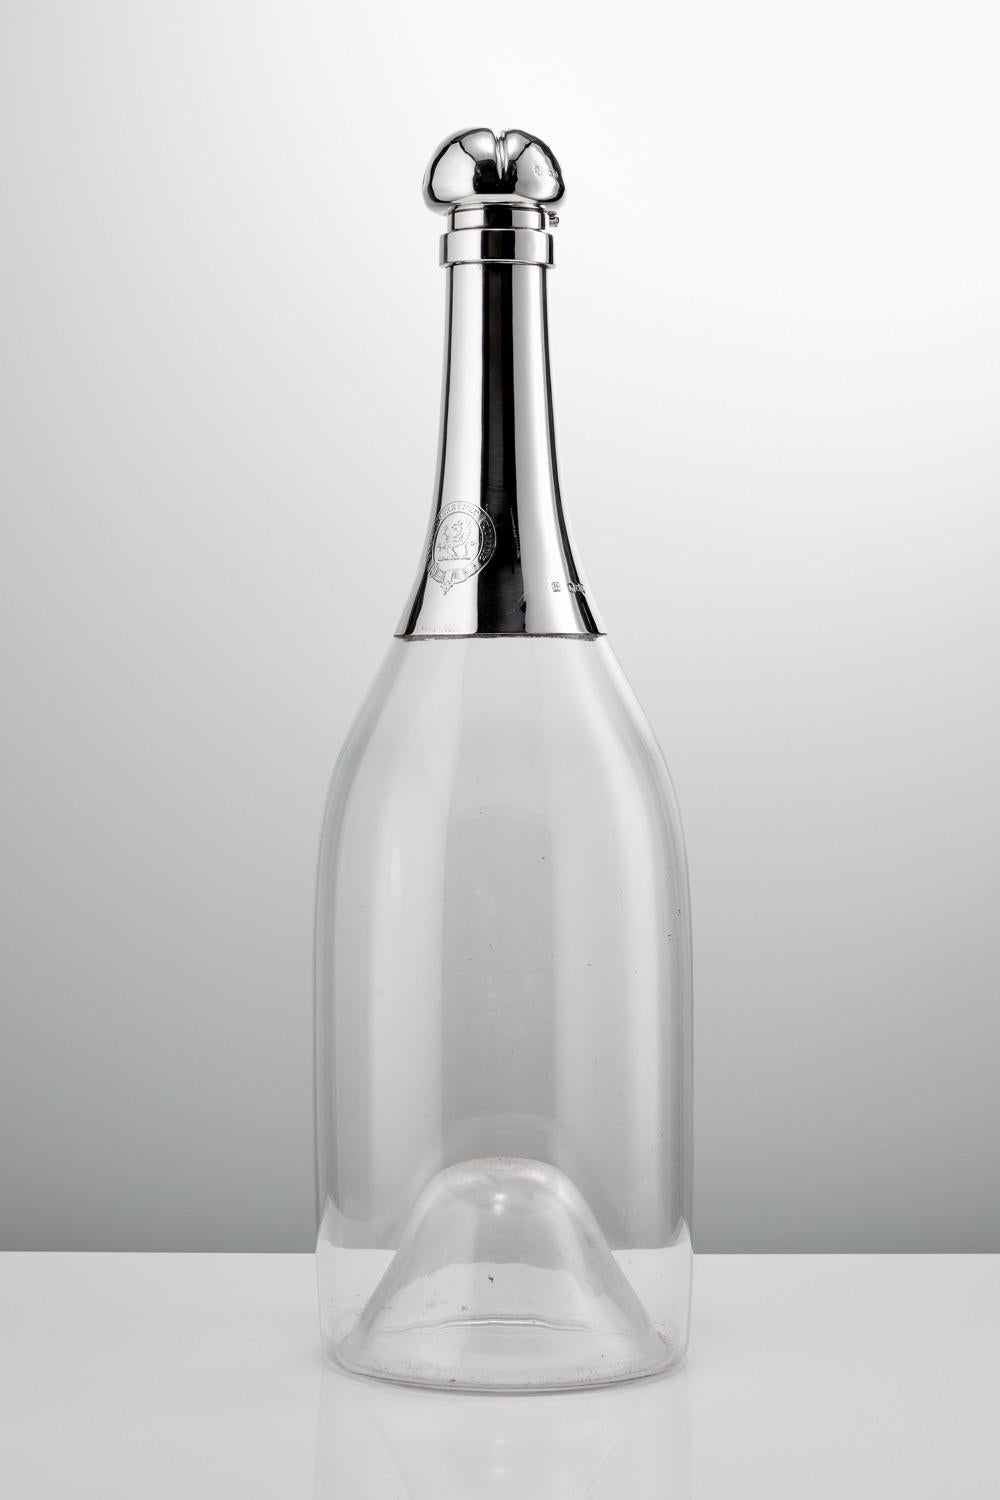 Eine wunderbare antike 19. Jahrhundert Glas und Sterling Silber Novelty Champagner-Flasche, 1892 Makers T Heath & J H Middleton. Eine monumentale und seltene Jeroboam Größe Neuheit geblasenem Glas und Silber montiert Champagner Dekanter.

Die